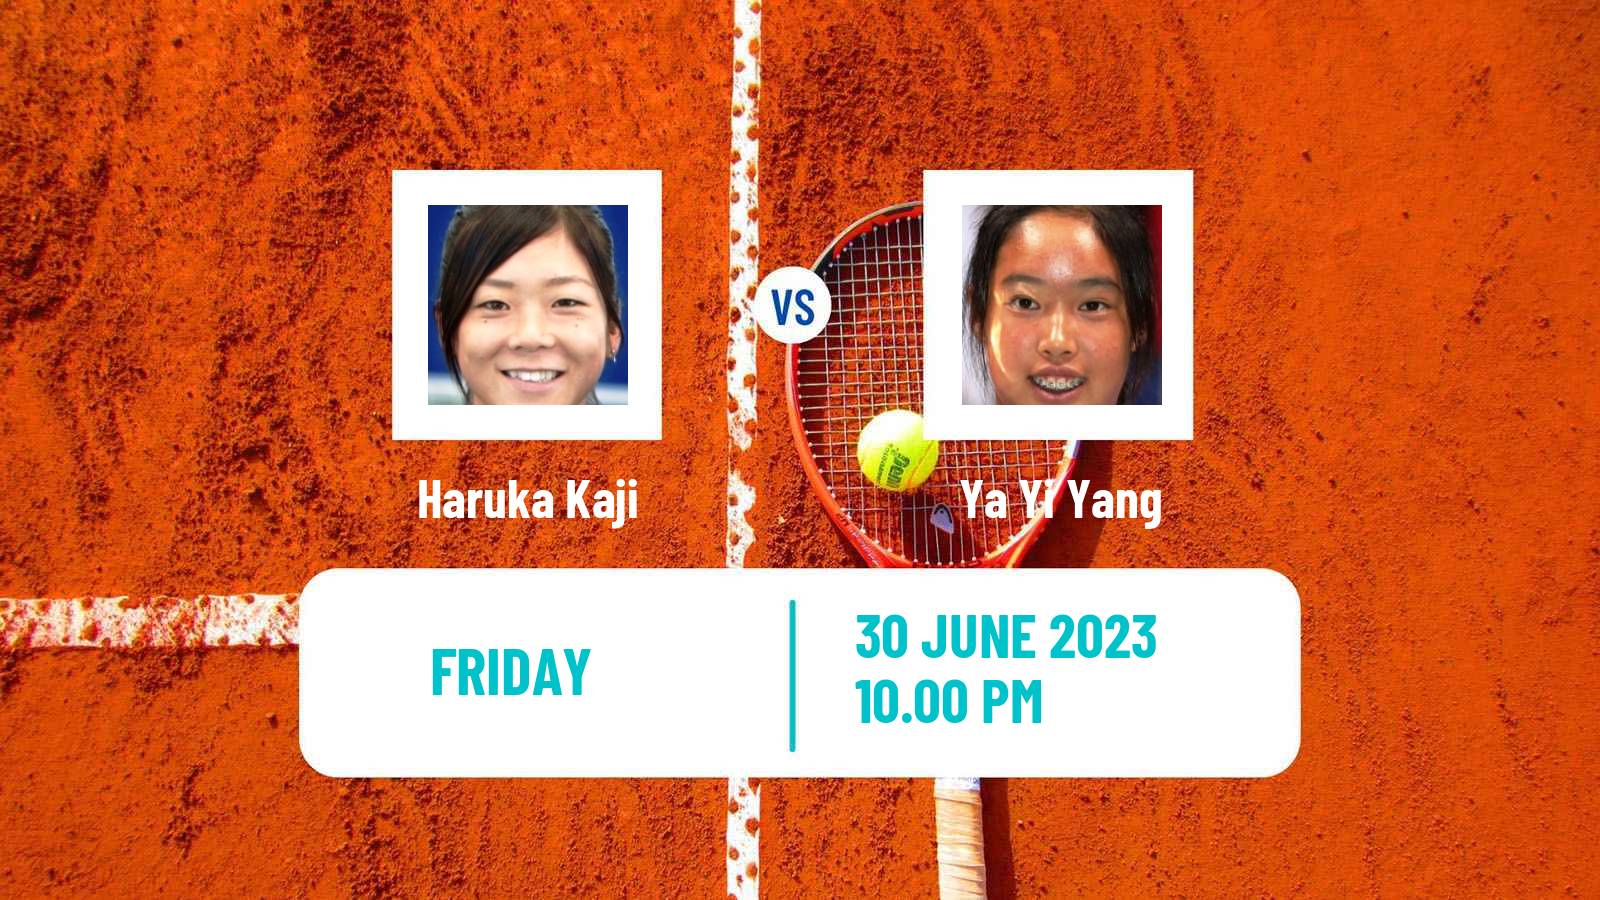 Tennis ITF W25 Hong Kong Women Haruka Kaji - Ya Yi Yang